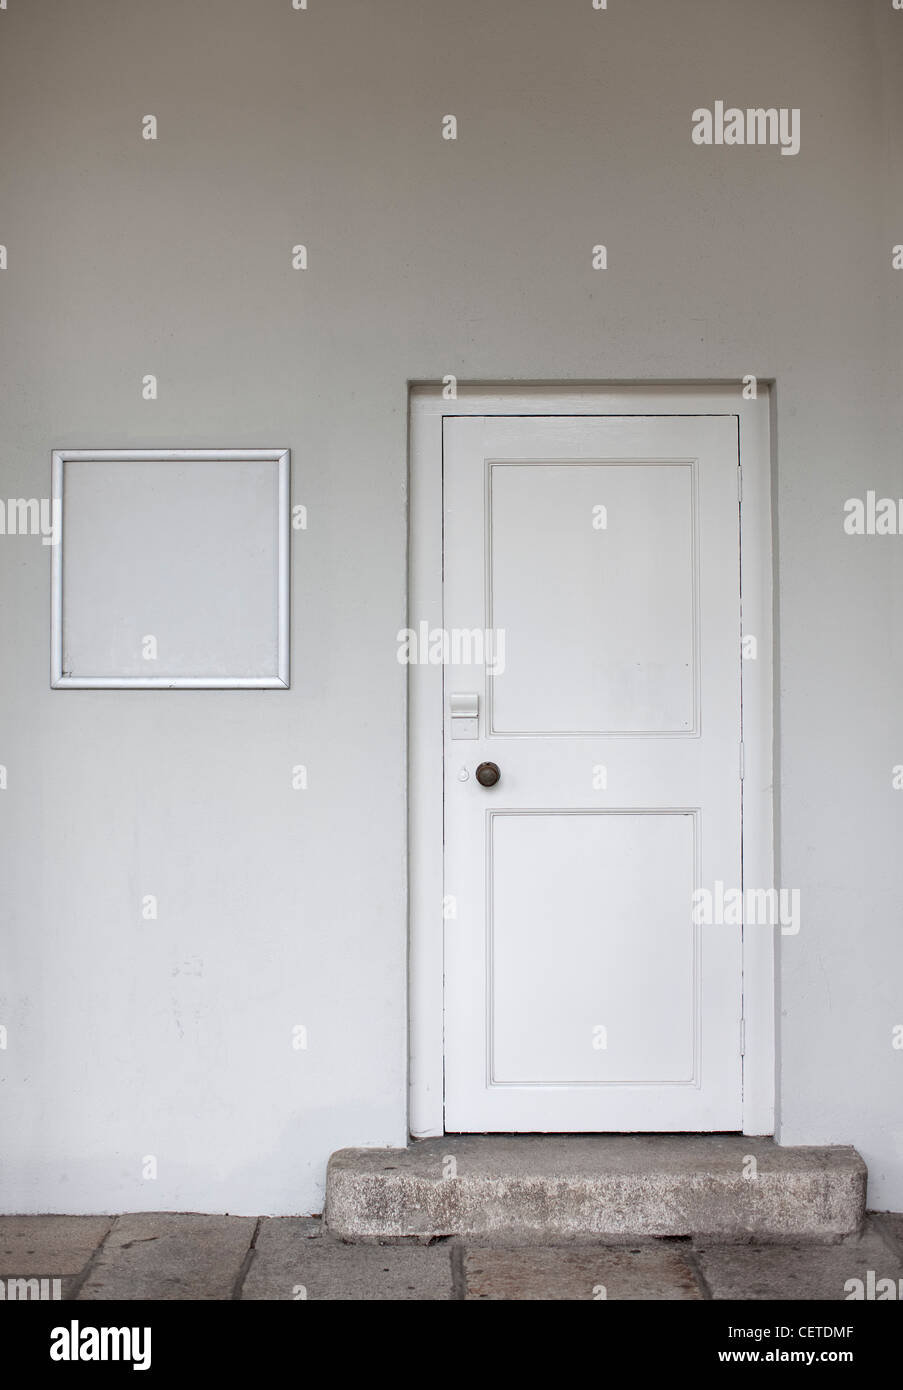 completely white doorway Stock Photo